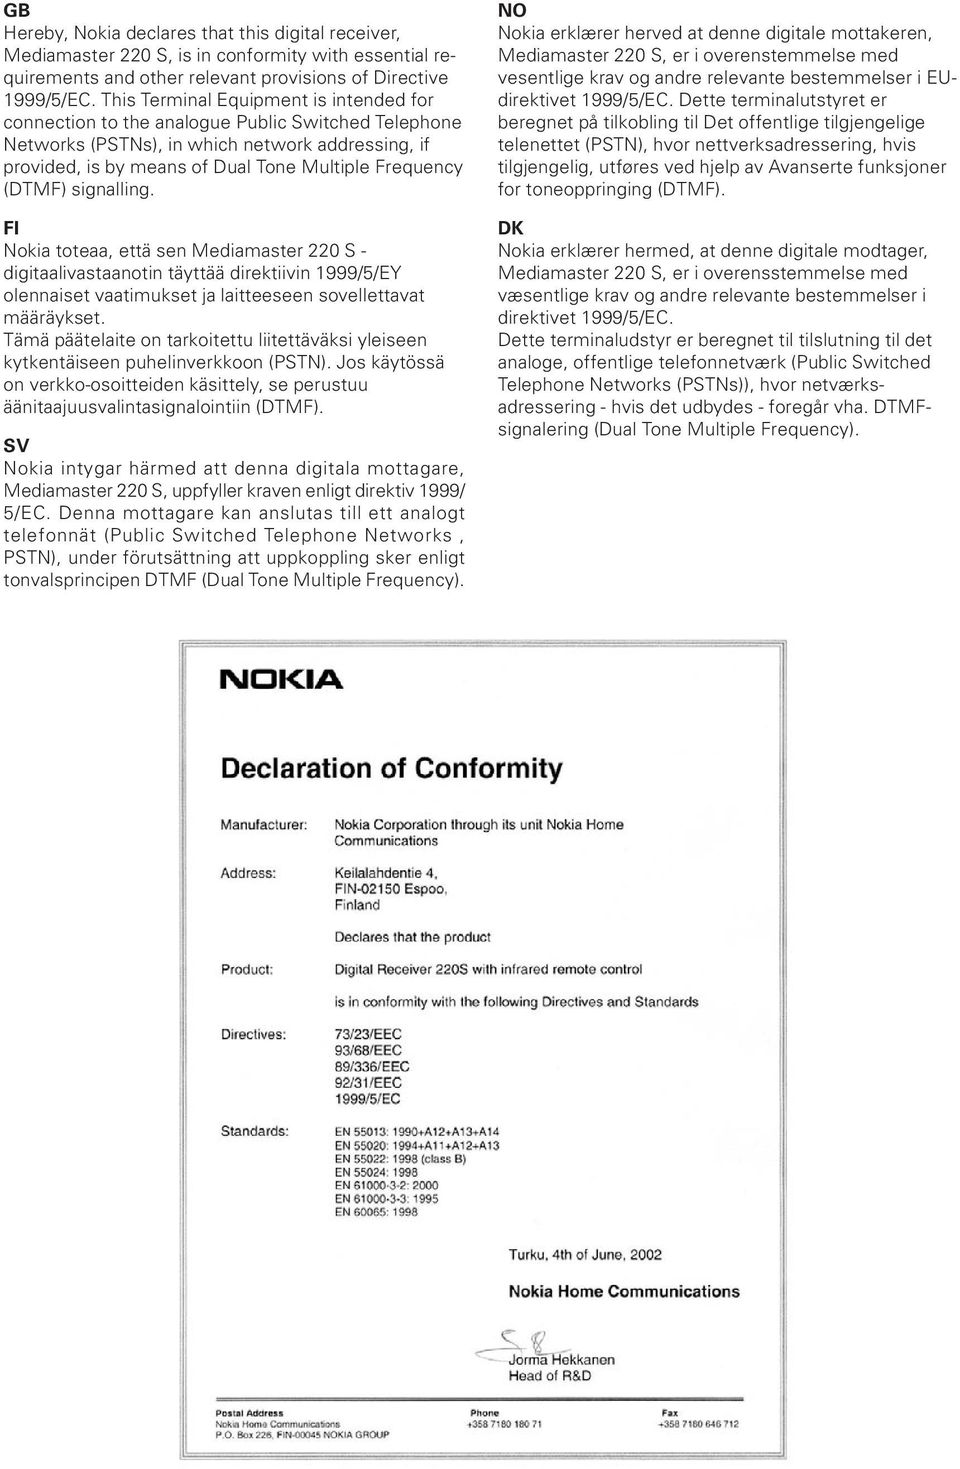 (DTMF) signalling. FI Nokia toteaa, että sen Mediamaster 220 S - digitaalivastaanotin täyttää direktiivin 1999/5/EY olennaiset vaatimukset ja laitteeseen sovellettavat määräykset.